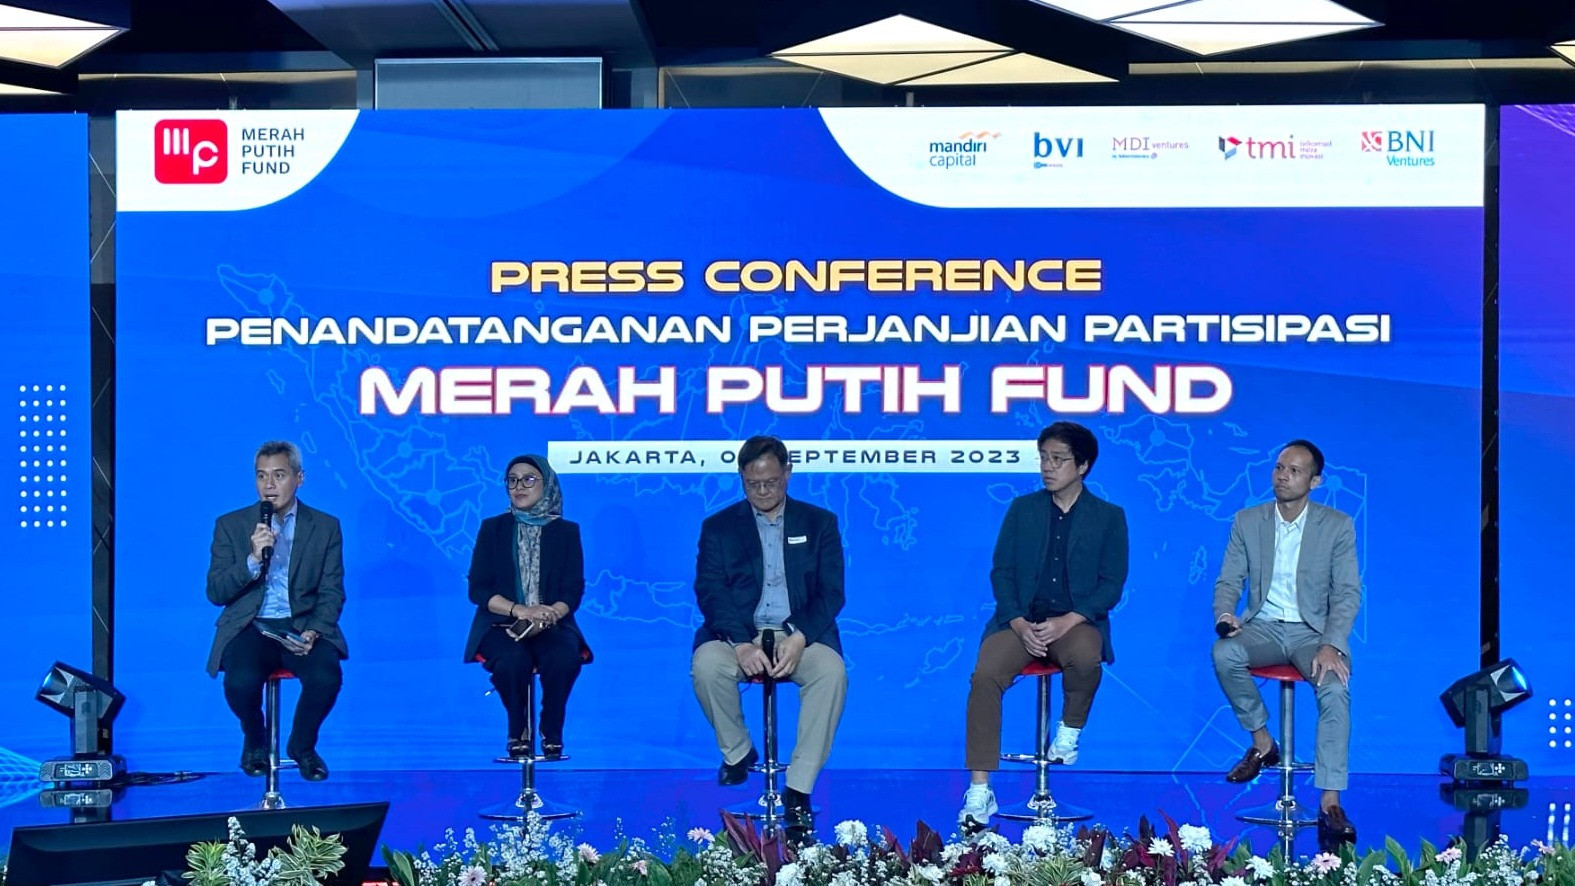 PT Telkom Indonesia (Persero) Tbk melalui entitas Corporate Venture Capital MDI Ventures, dan juga Telkomsel Mitra Inovasi (TMI), berpartisipasi dalam penandatanganan Perjanjian Partisipasi Merah Putih Fund di Jakarta (4/9).